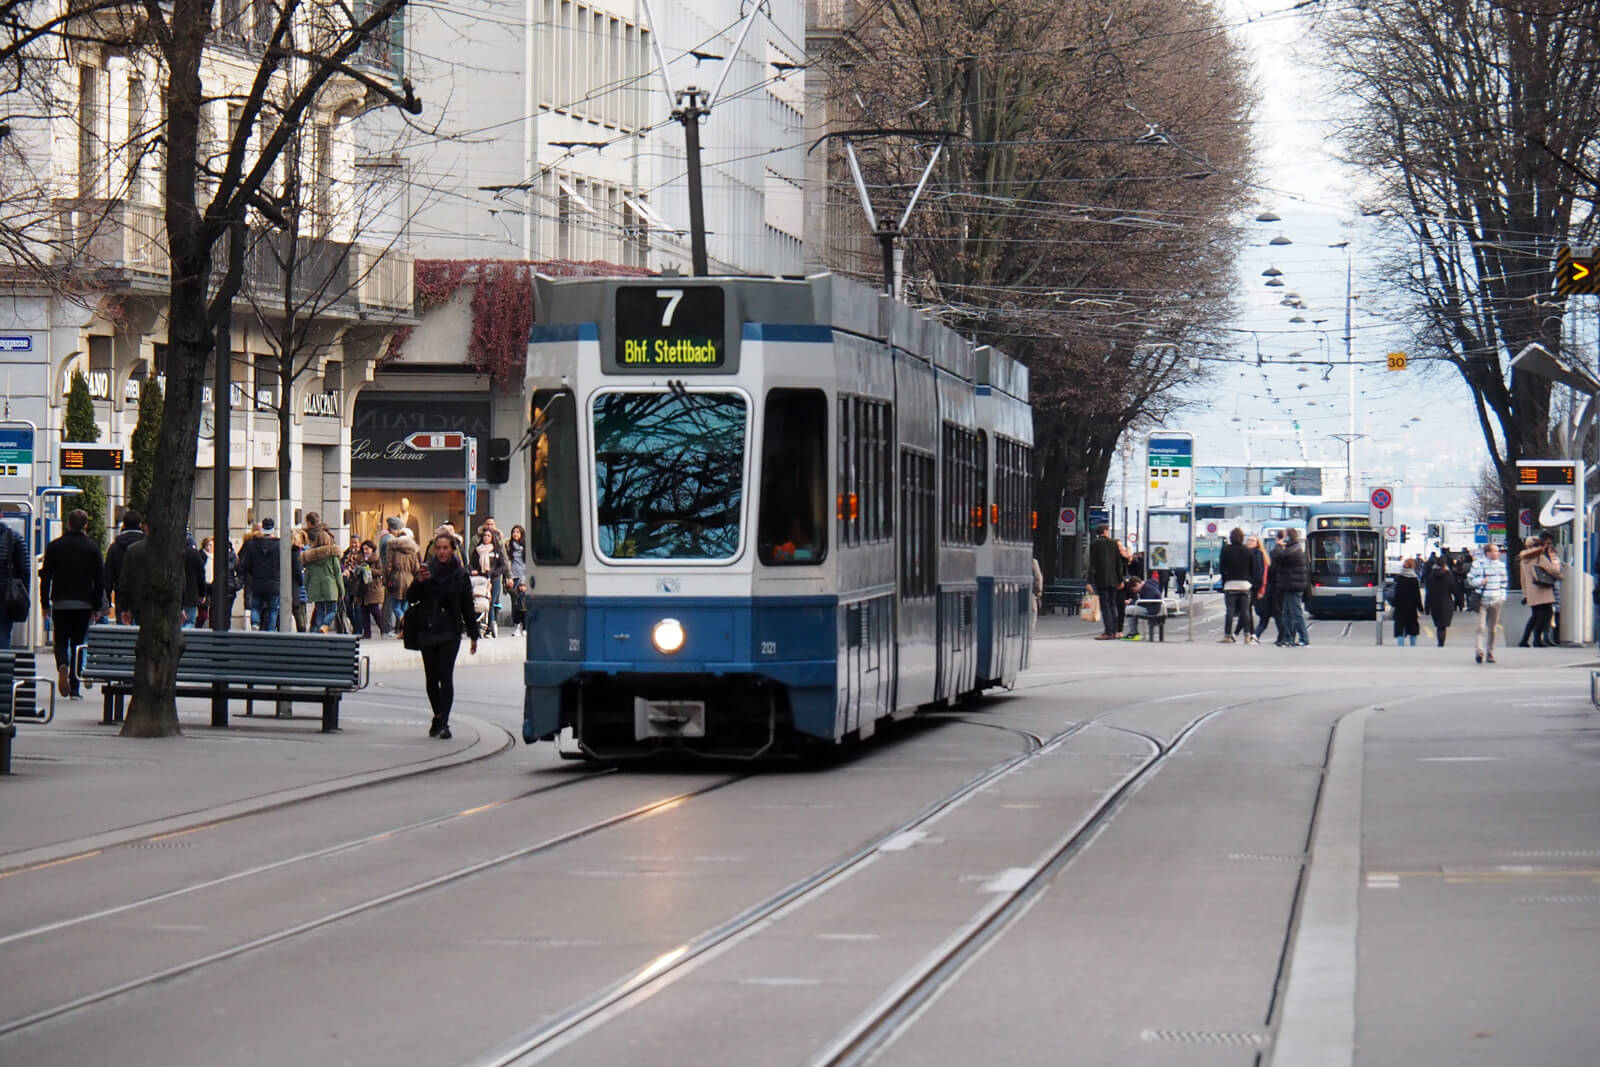 A tram on Bahnhofstrasse in Zürich, Switzerland